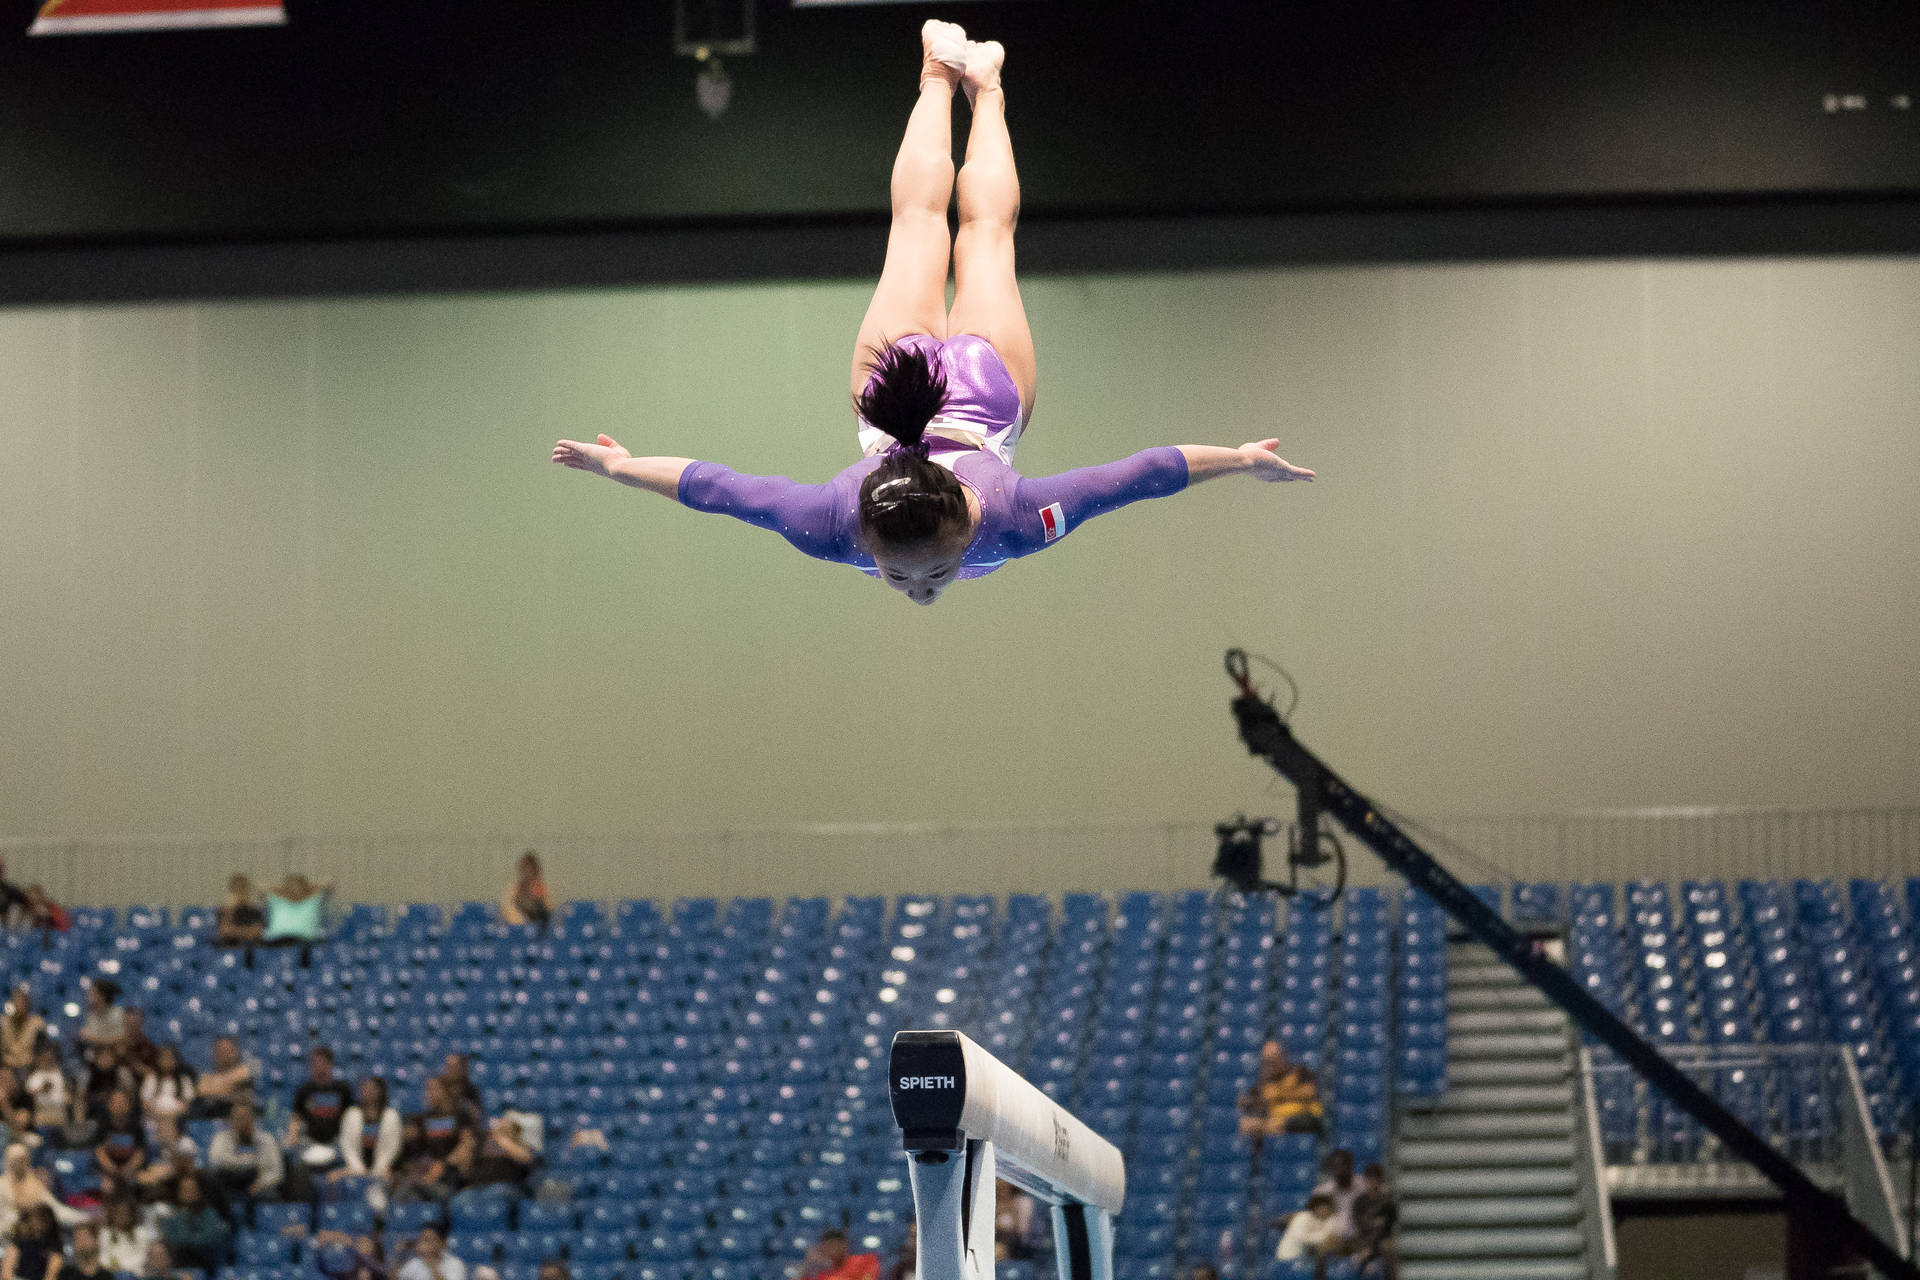 Gymnastics Dive In Air Background